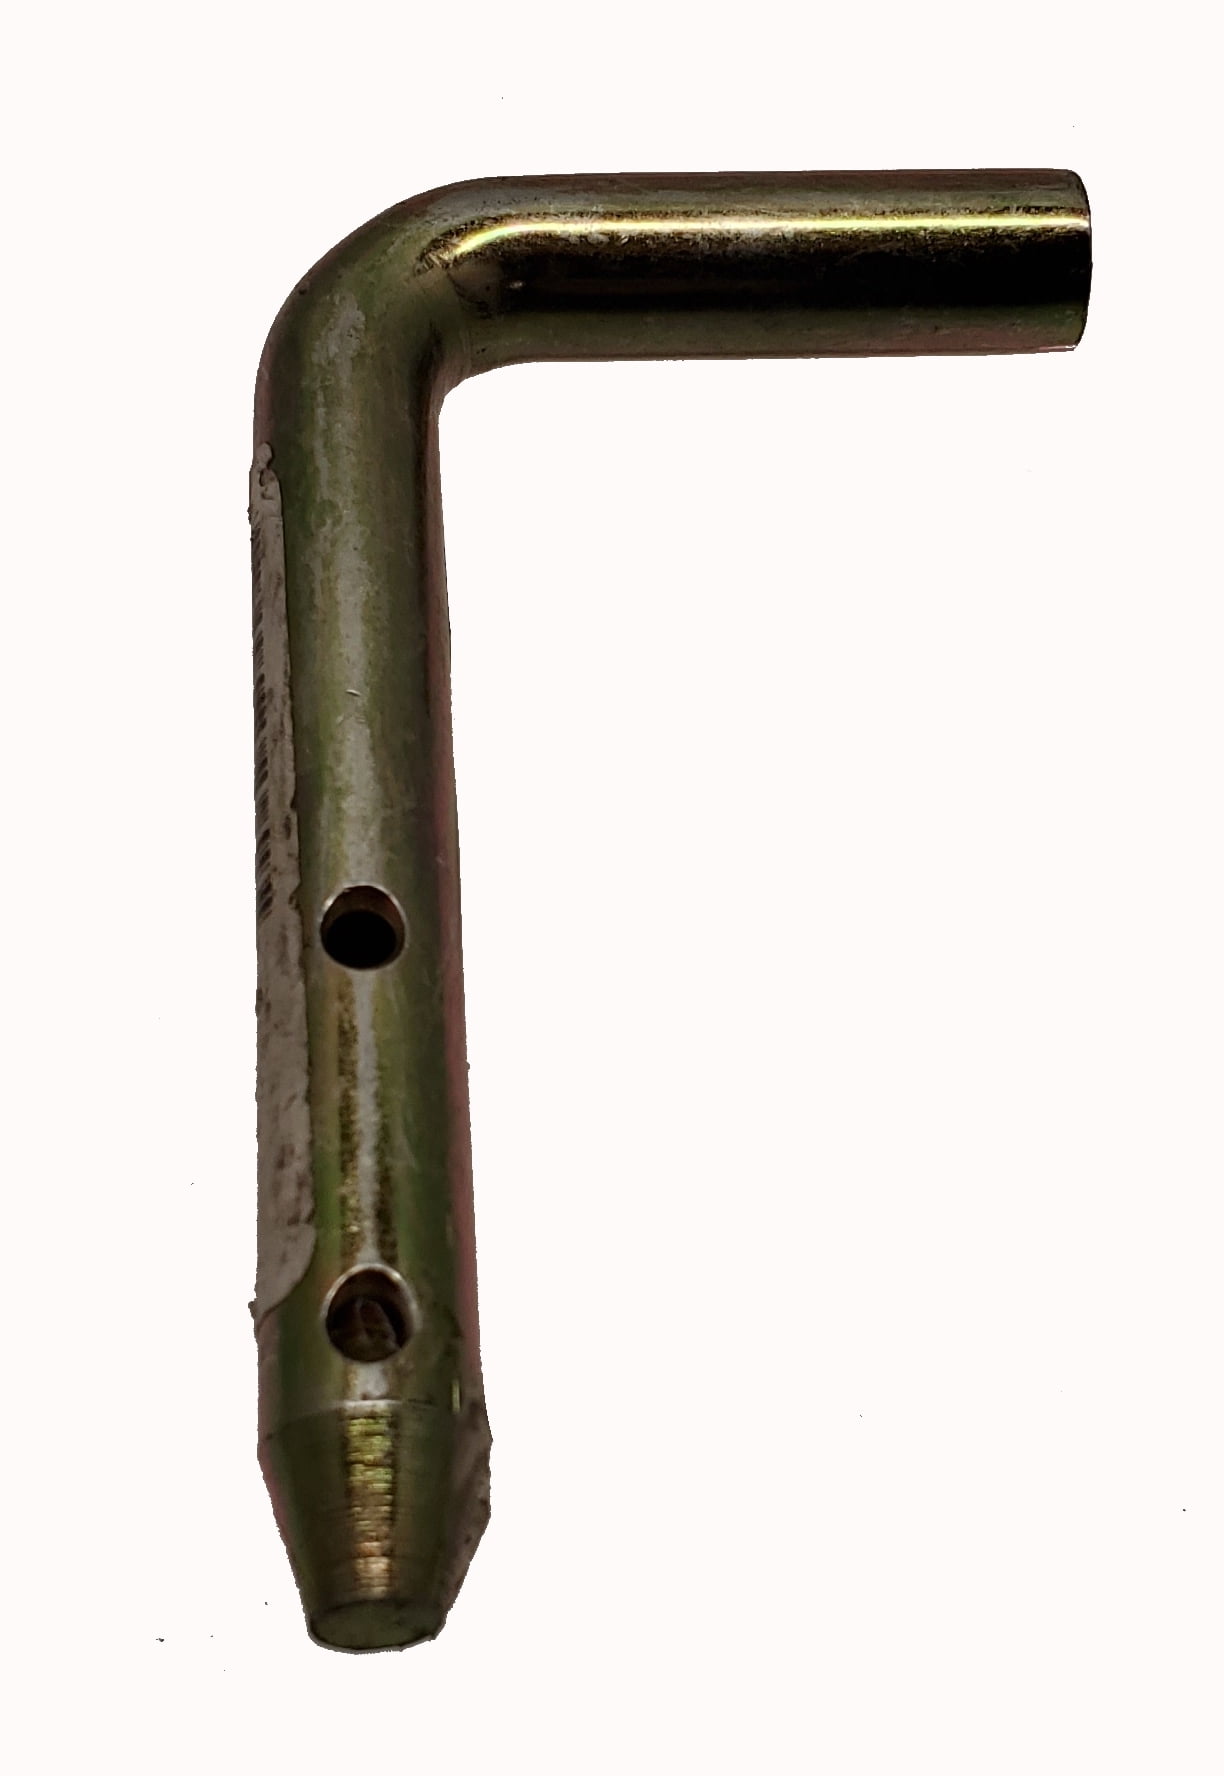 John Deere Original Equipment Pin Fastener M943341